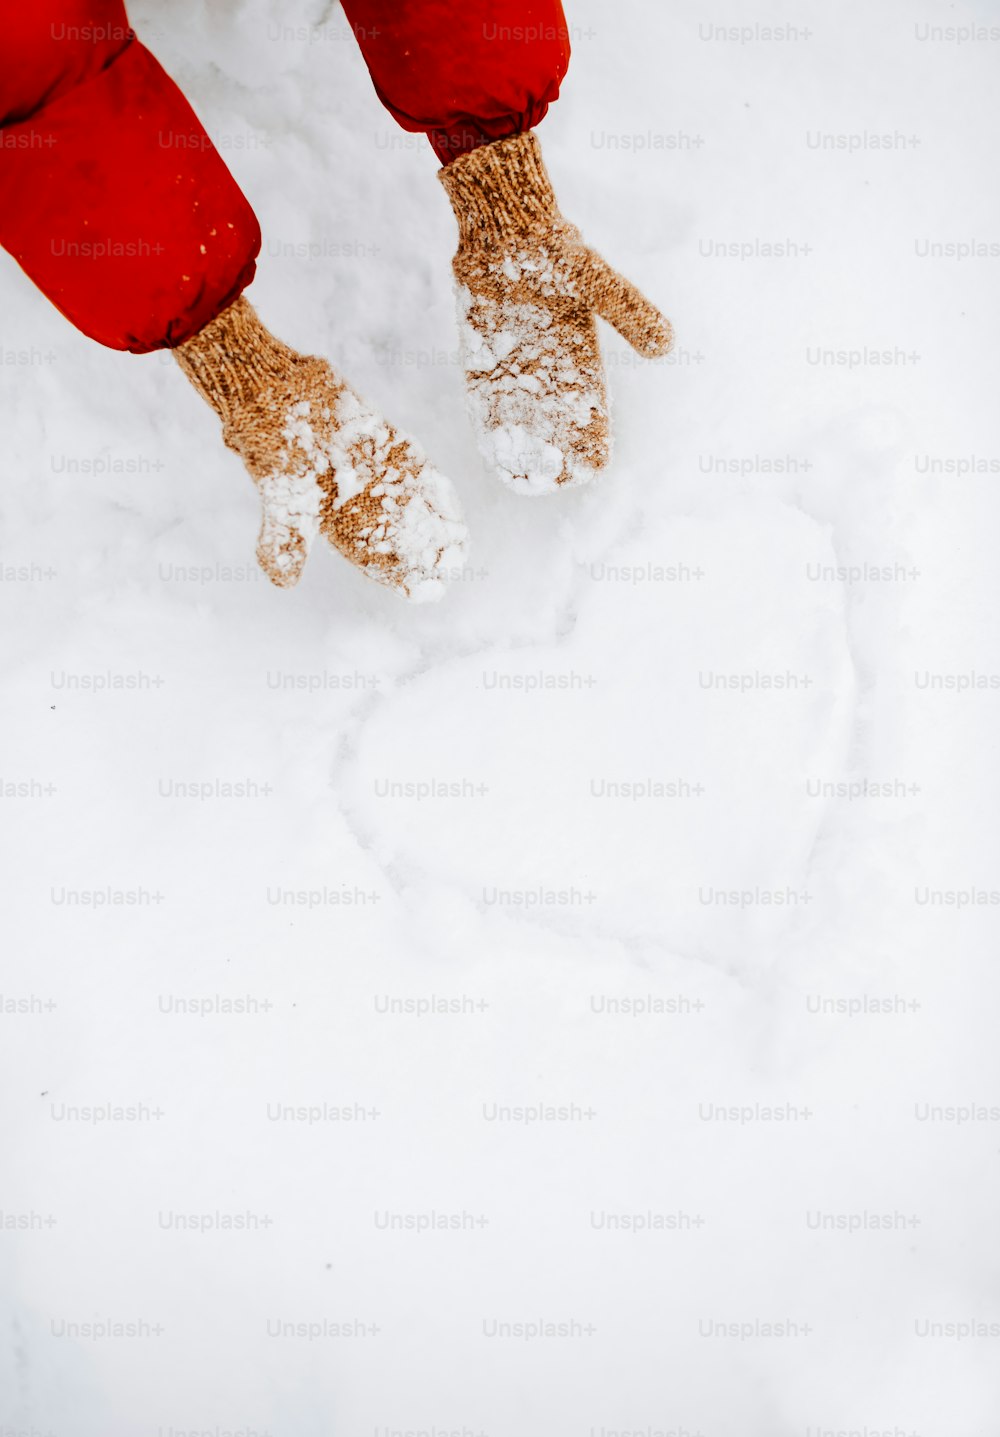 Una persona parada en la nieve con los pies en la nieve